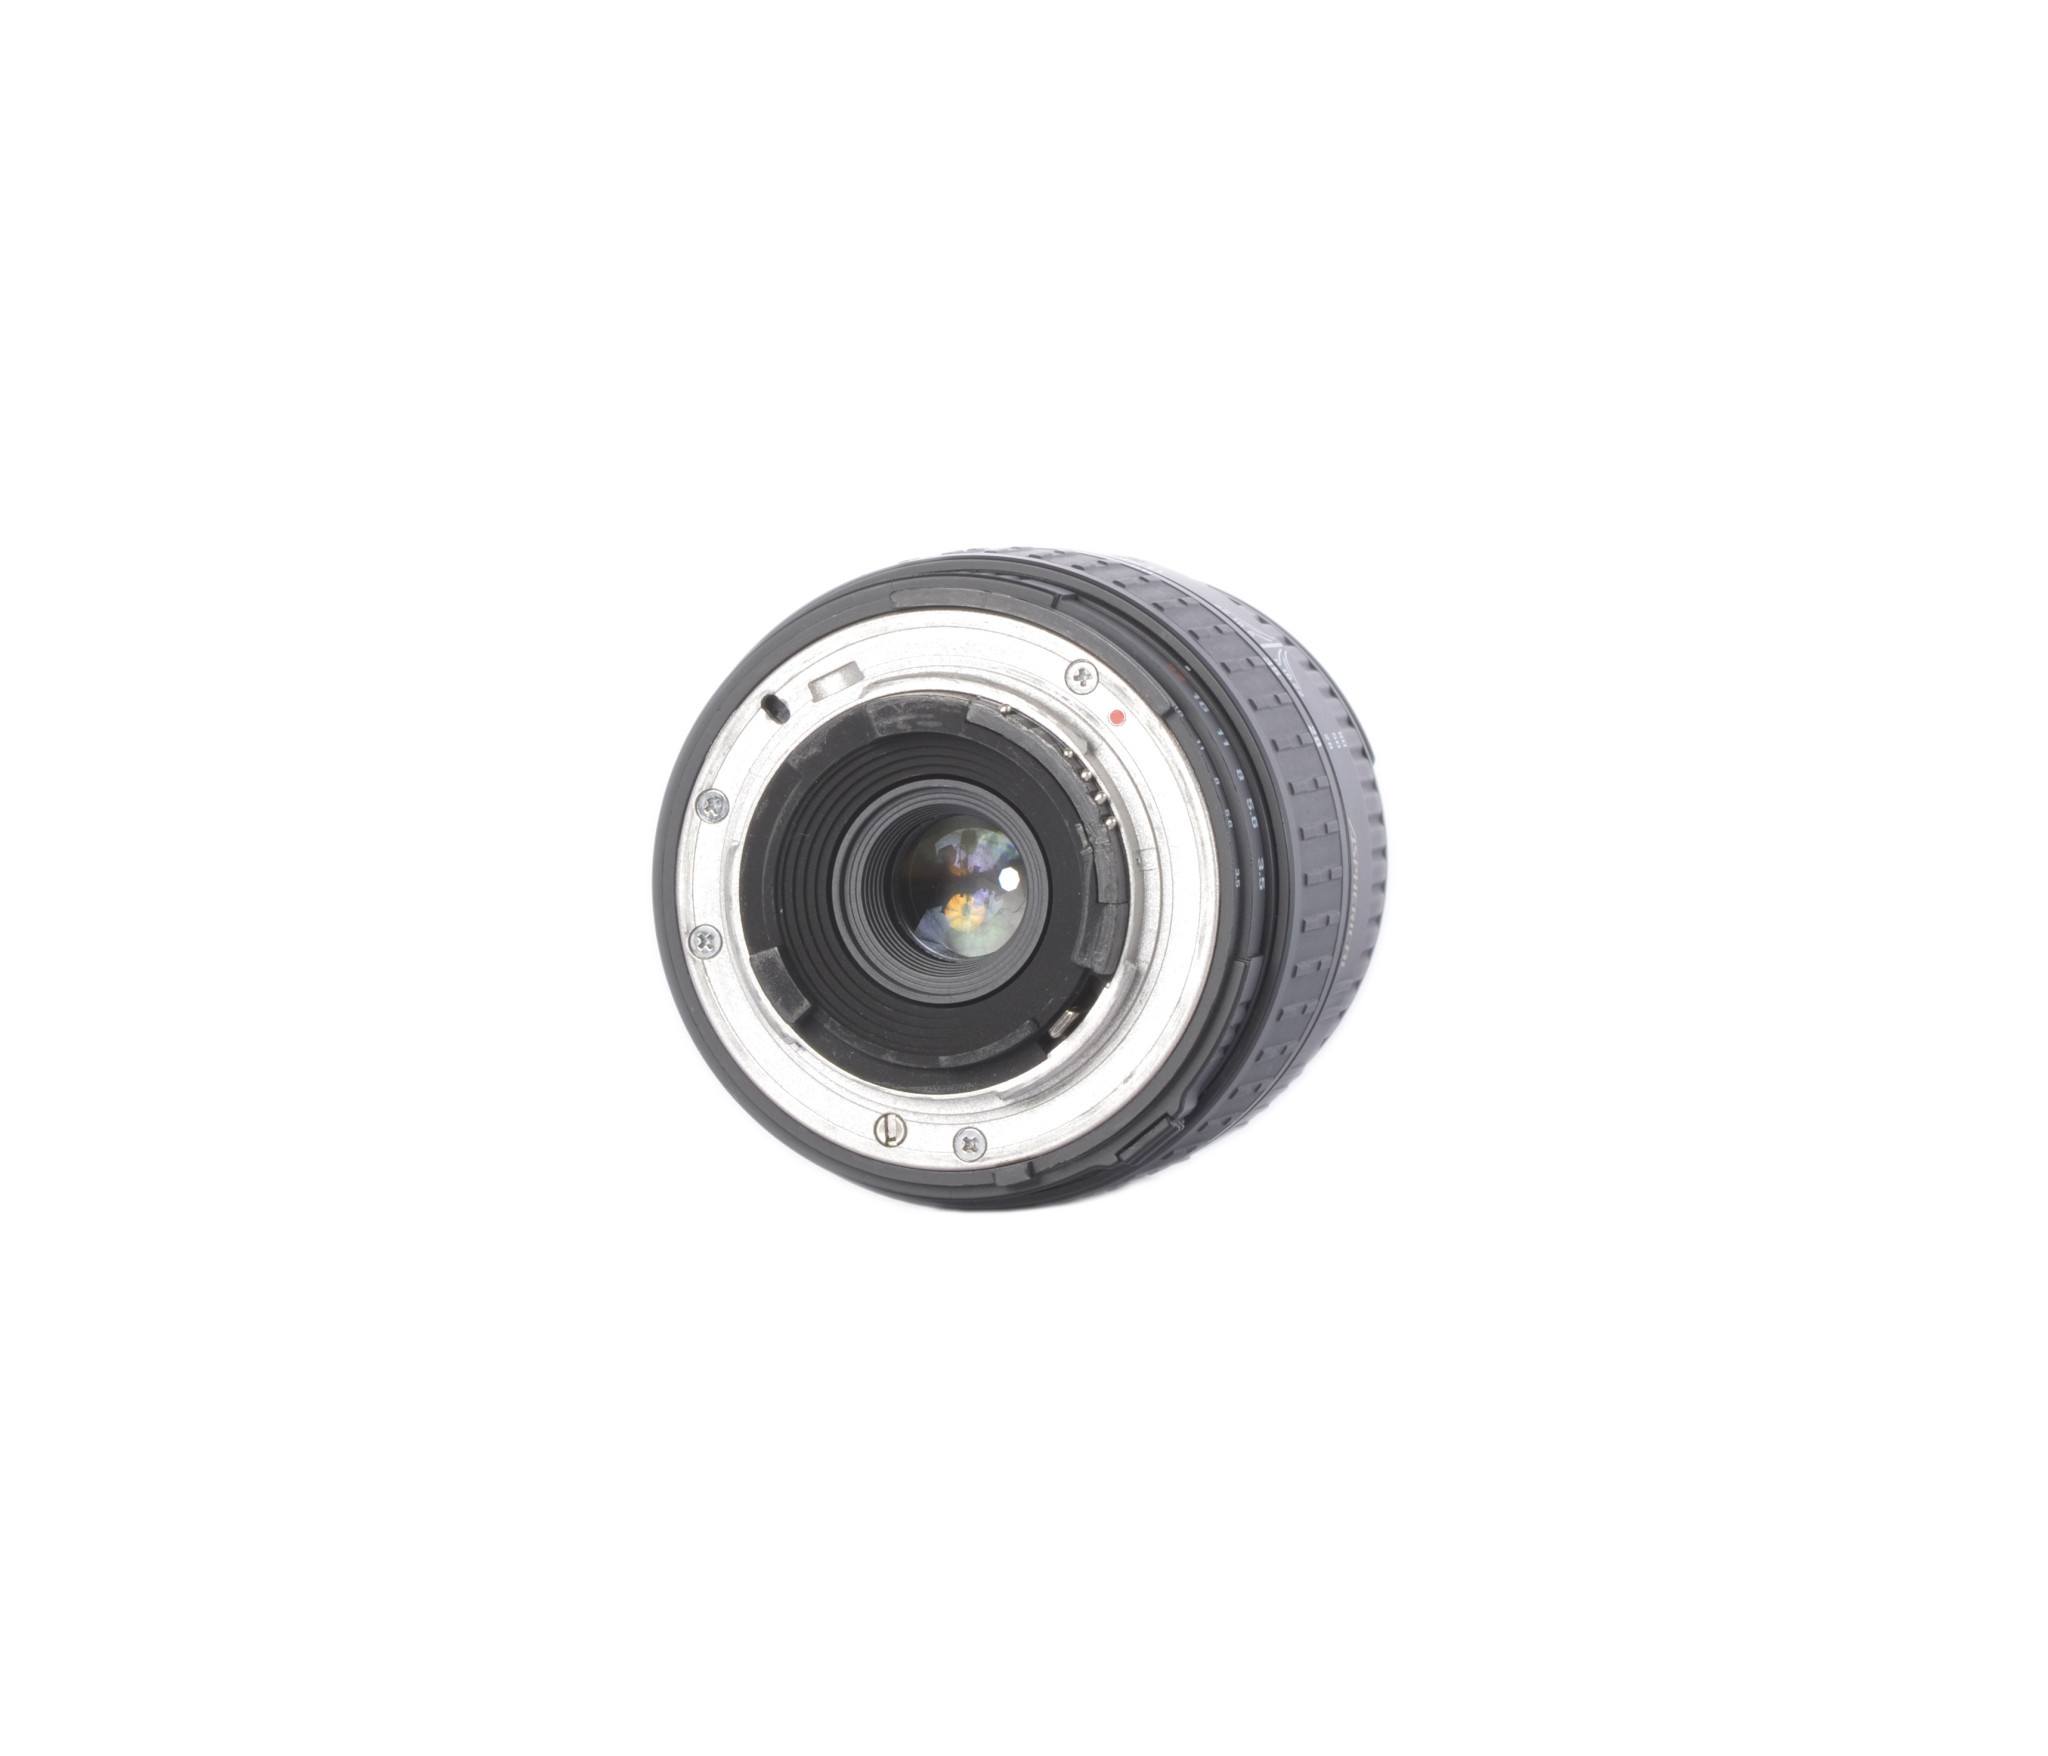 Sigma 28-80mm f/3.5-5.6 II Macro - LeZot Camera | Sales and Camera Repair |  Camera Buyers | Digital Printing